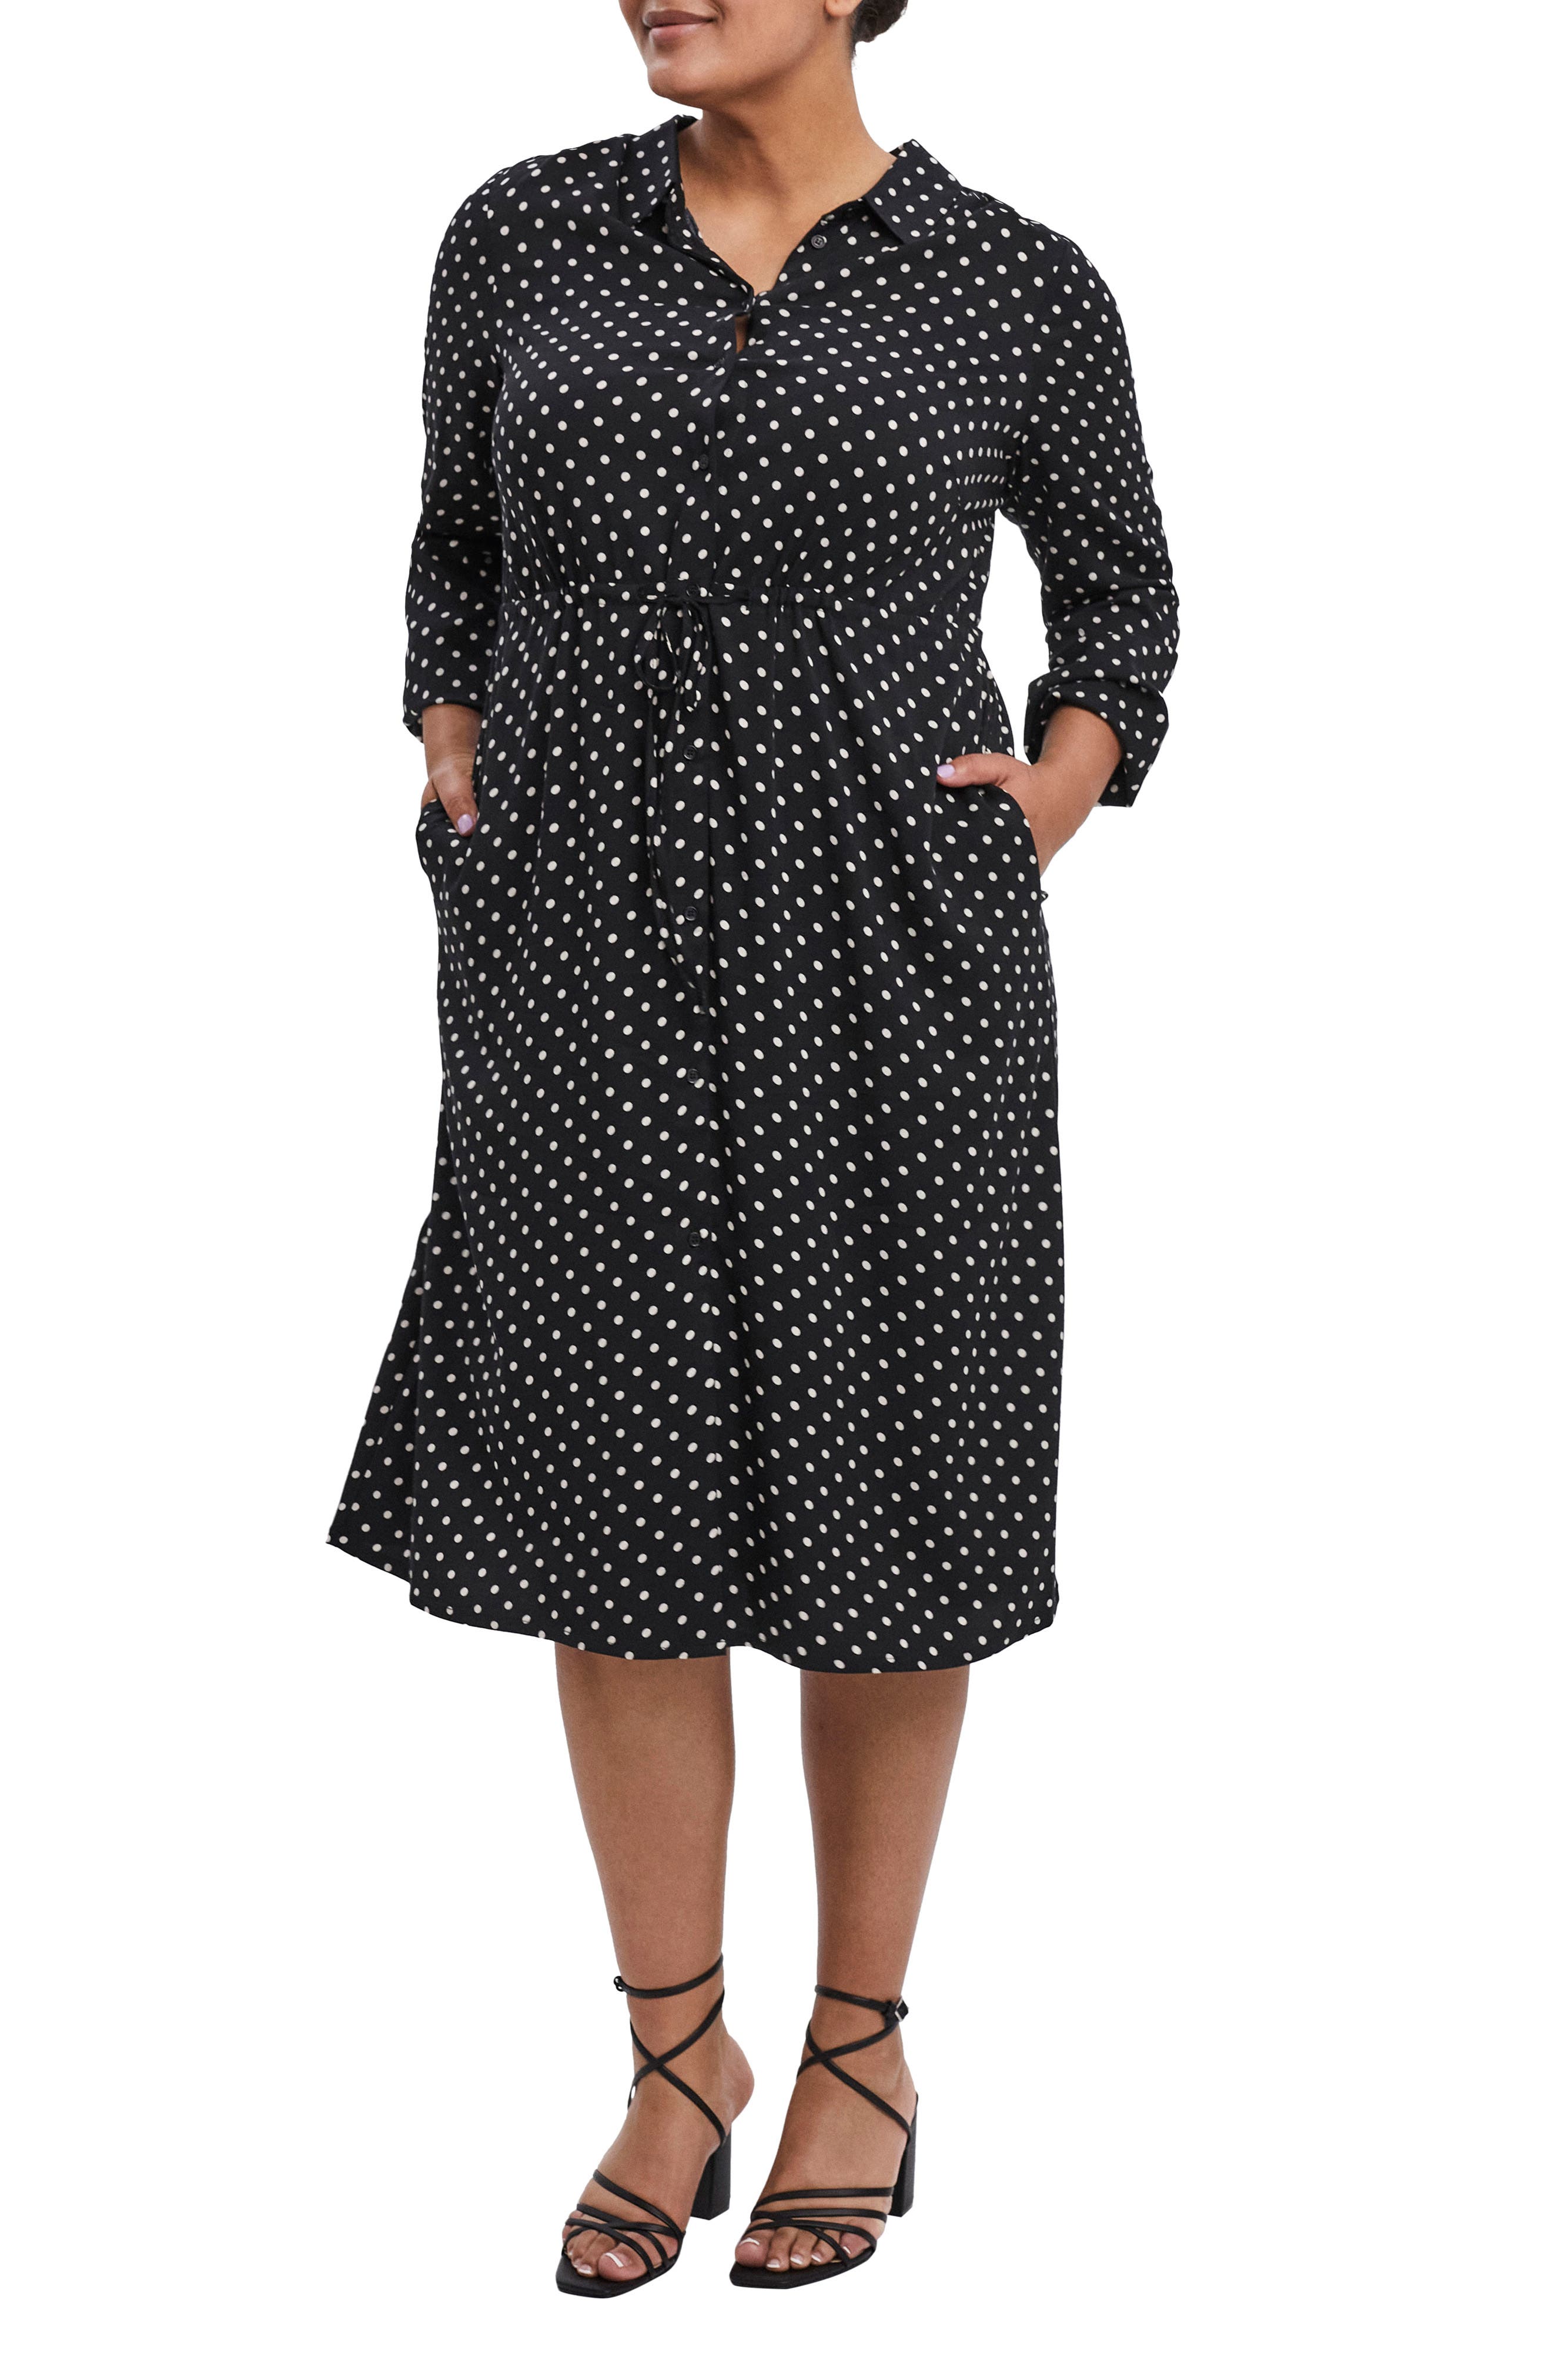 Women's Office Work Wrap Dress Knit Career Long Sleeves Black Plus Size 16W 